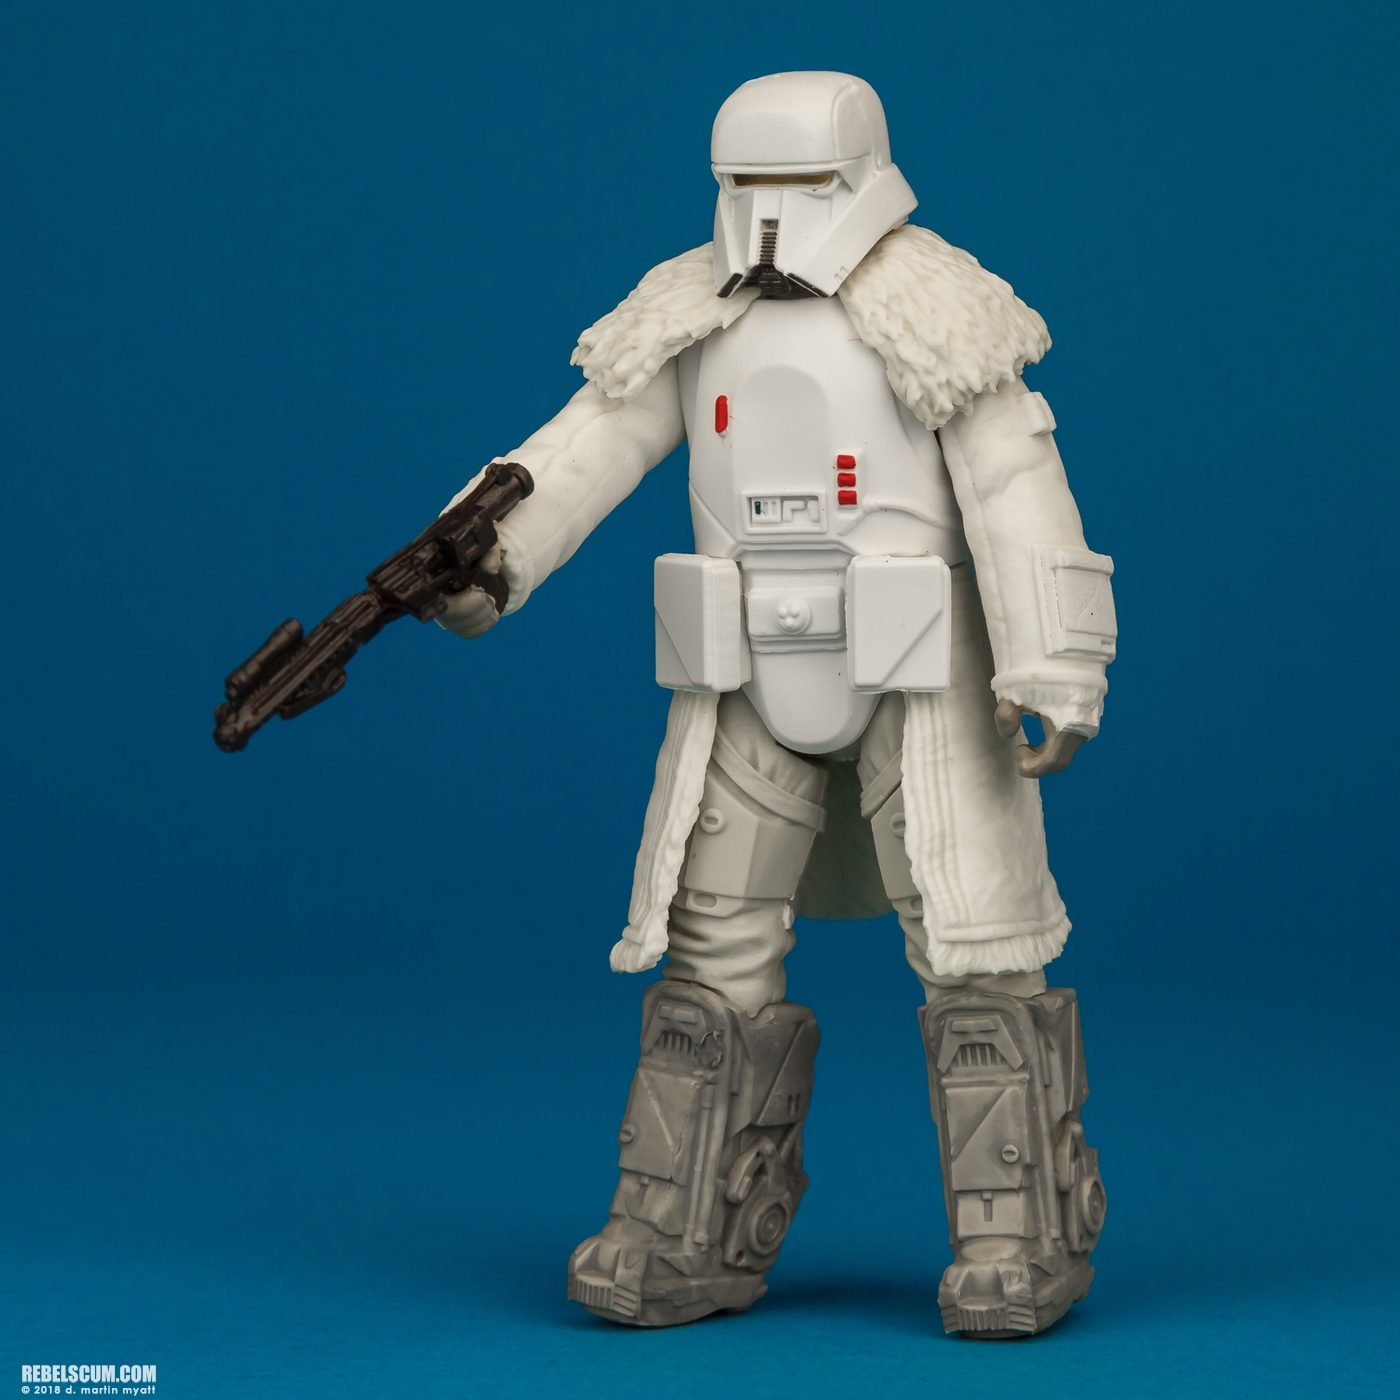 Range-Trooper-Solo-Star-Wars-Universe-ForceLink-2-Hasbro-006.jpg